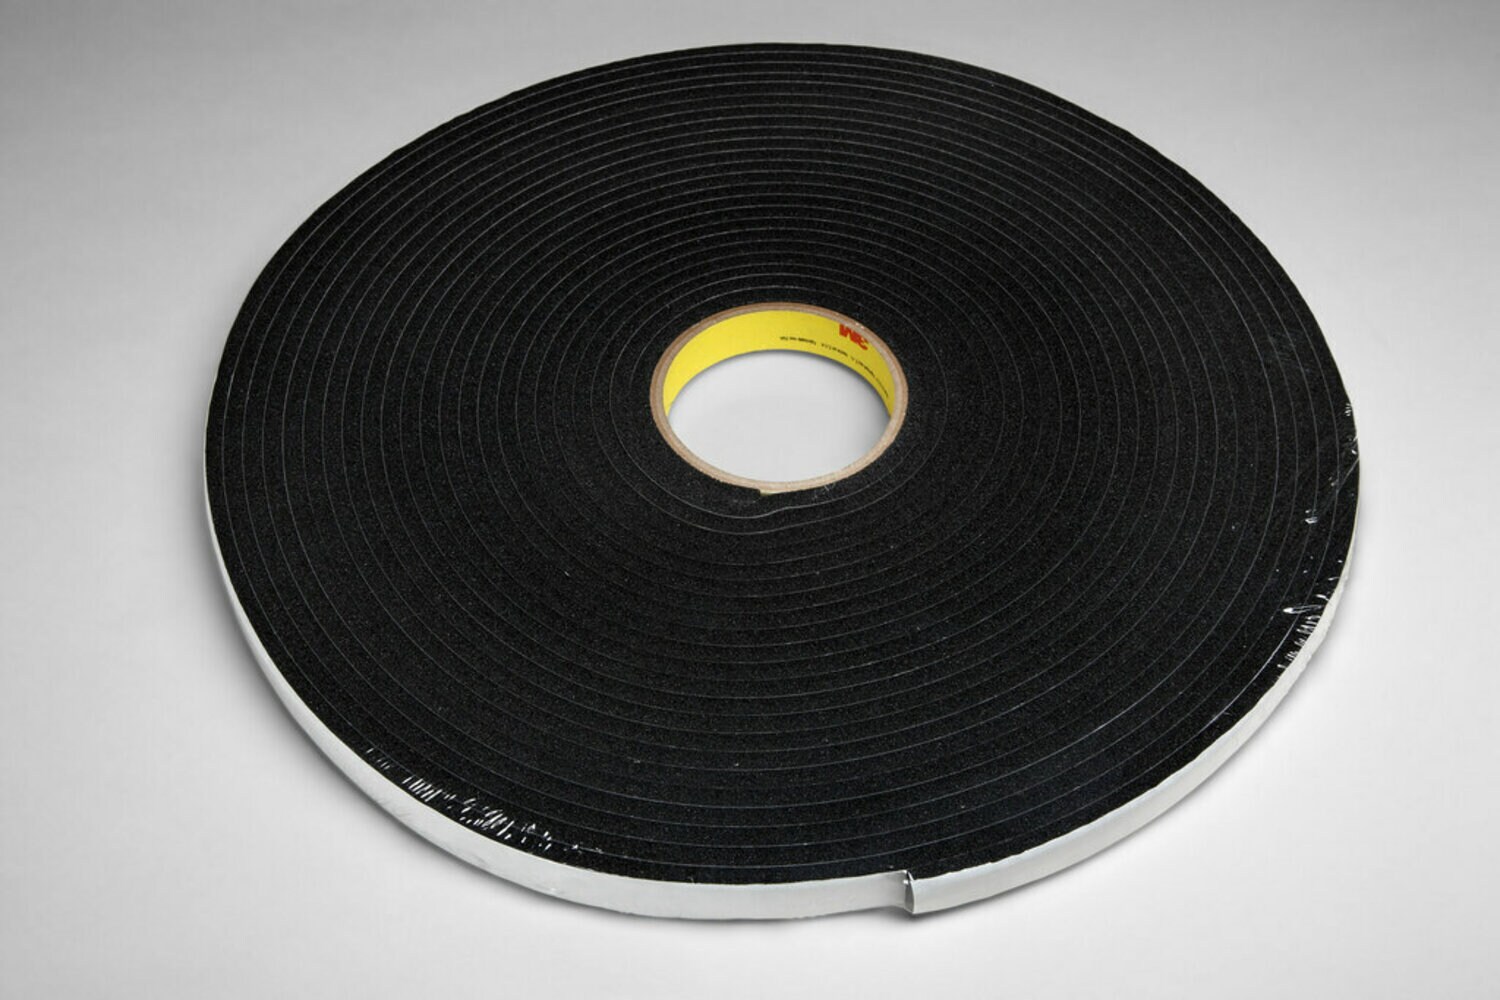 7100021952 - 3M Vinyl Foam Tape 4504, Black, 2 in x 18 yd, 250 mil, 6 rolls per case